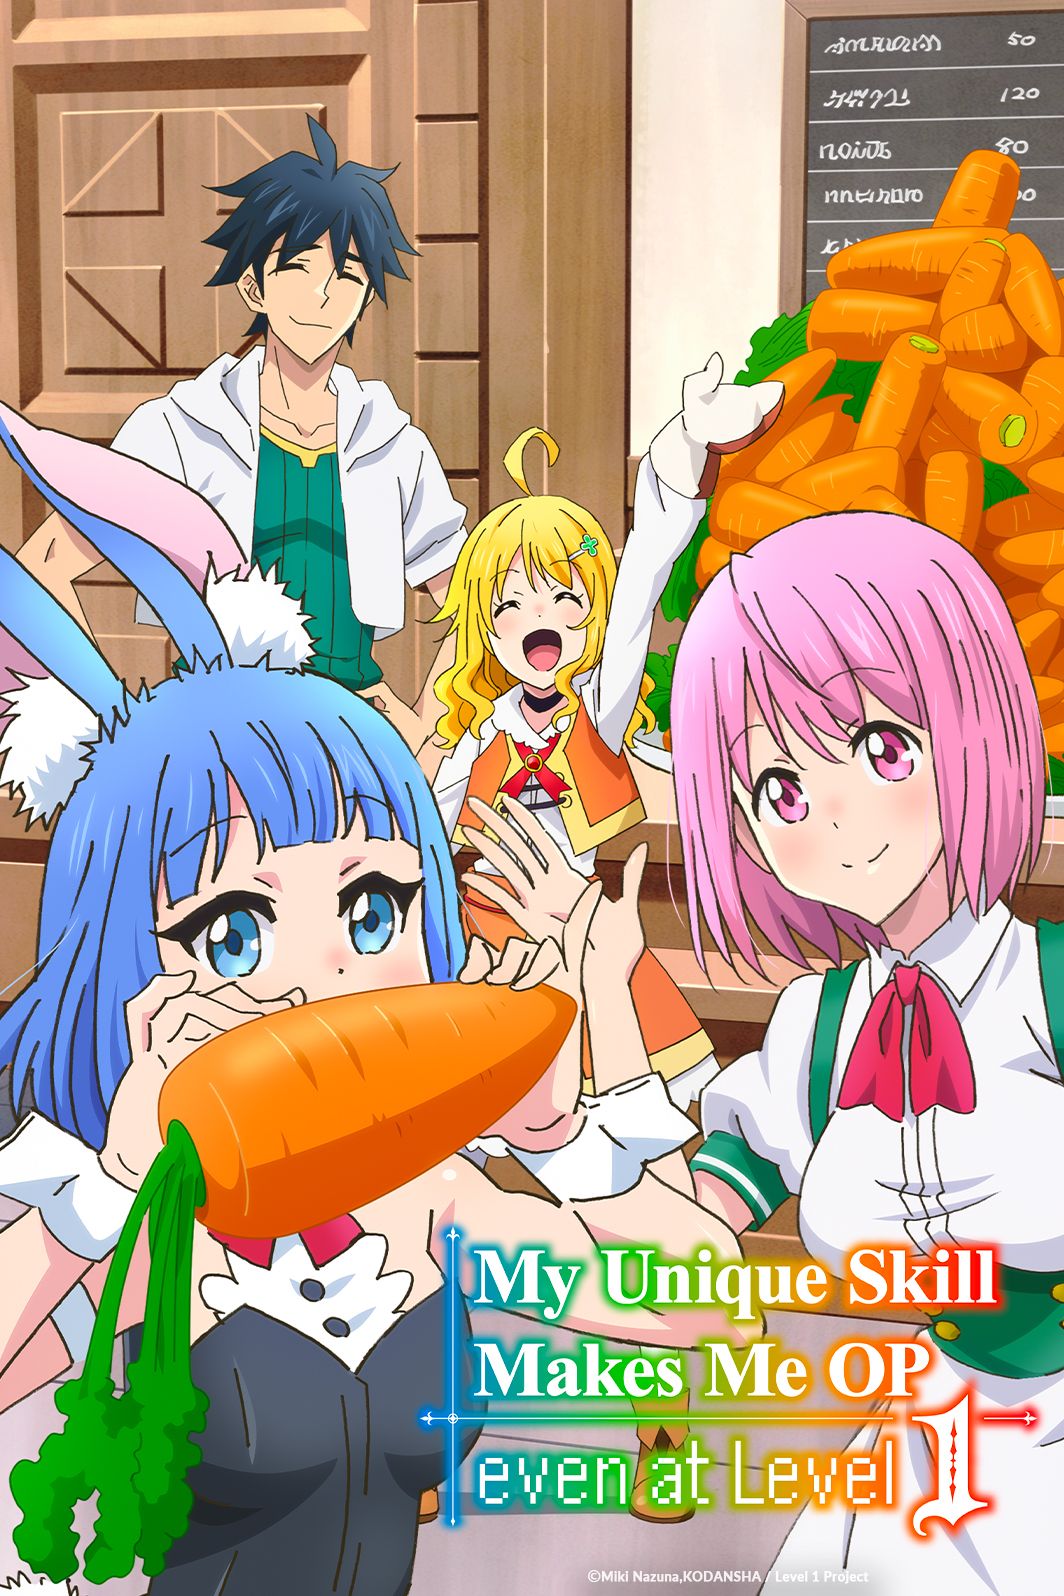 Anime - My Unique Skill Makes Me OP even at Level 1 - Episode #3 - Je massacrerai ces petites choses noires0